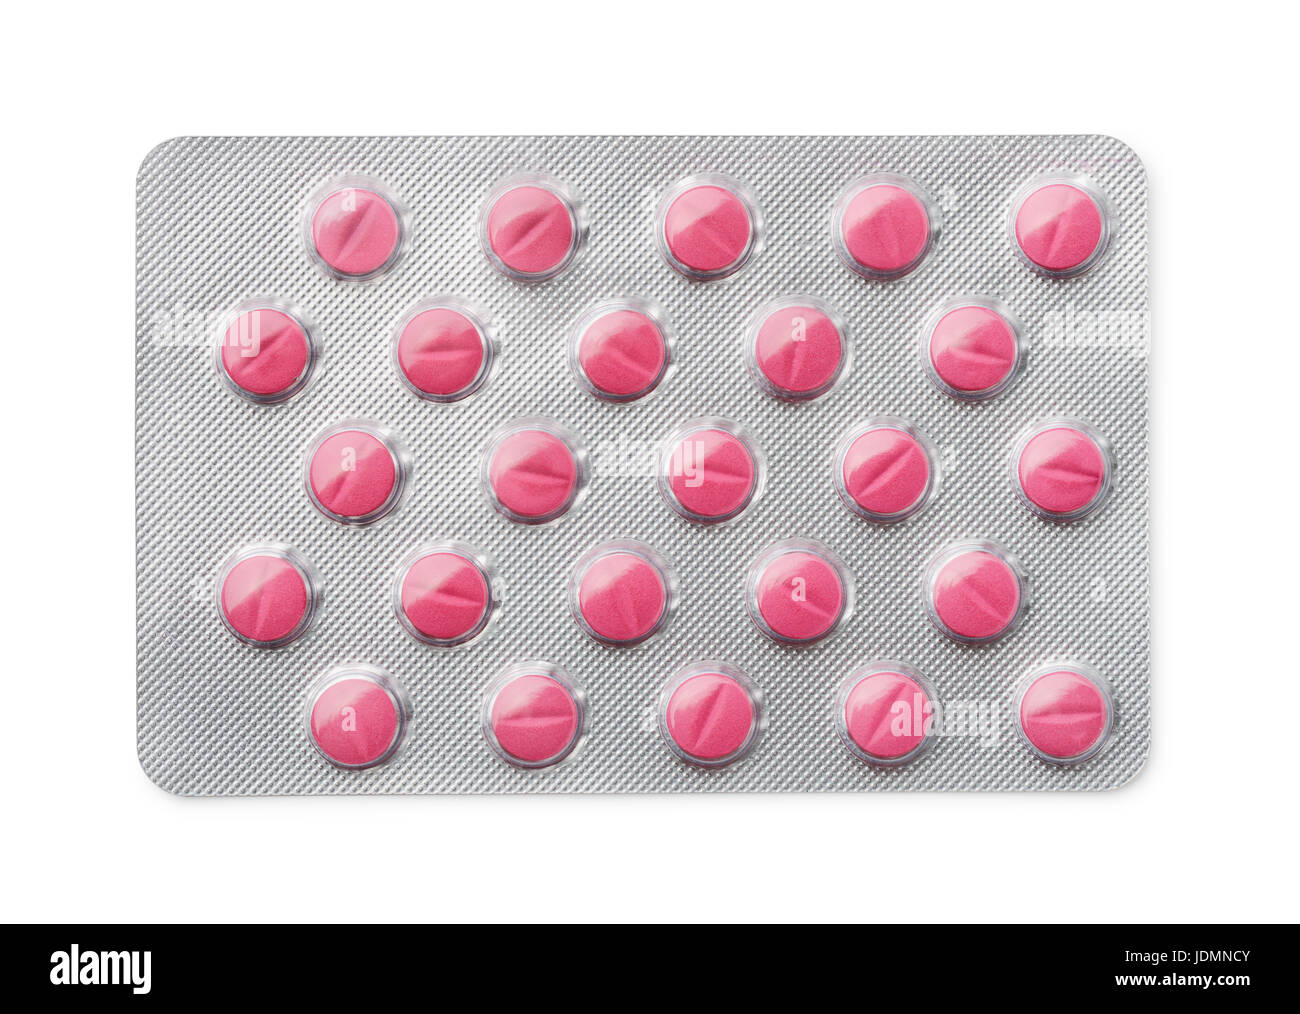 Розовые таблетки название. Розовые таблетки. Ярко розовые таблетки. Маленькие розовые таблетки. Психотропные таблетки розового цвета.